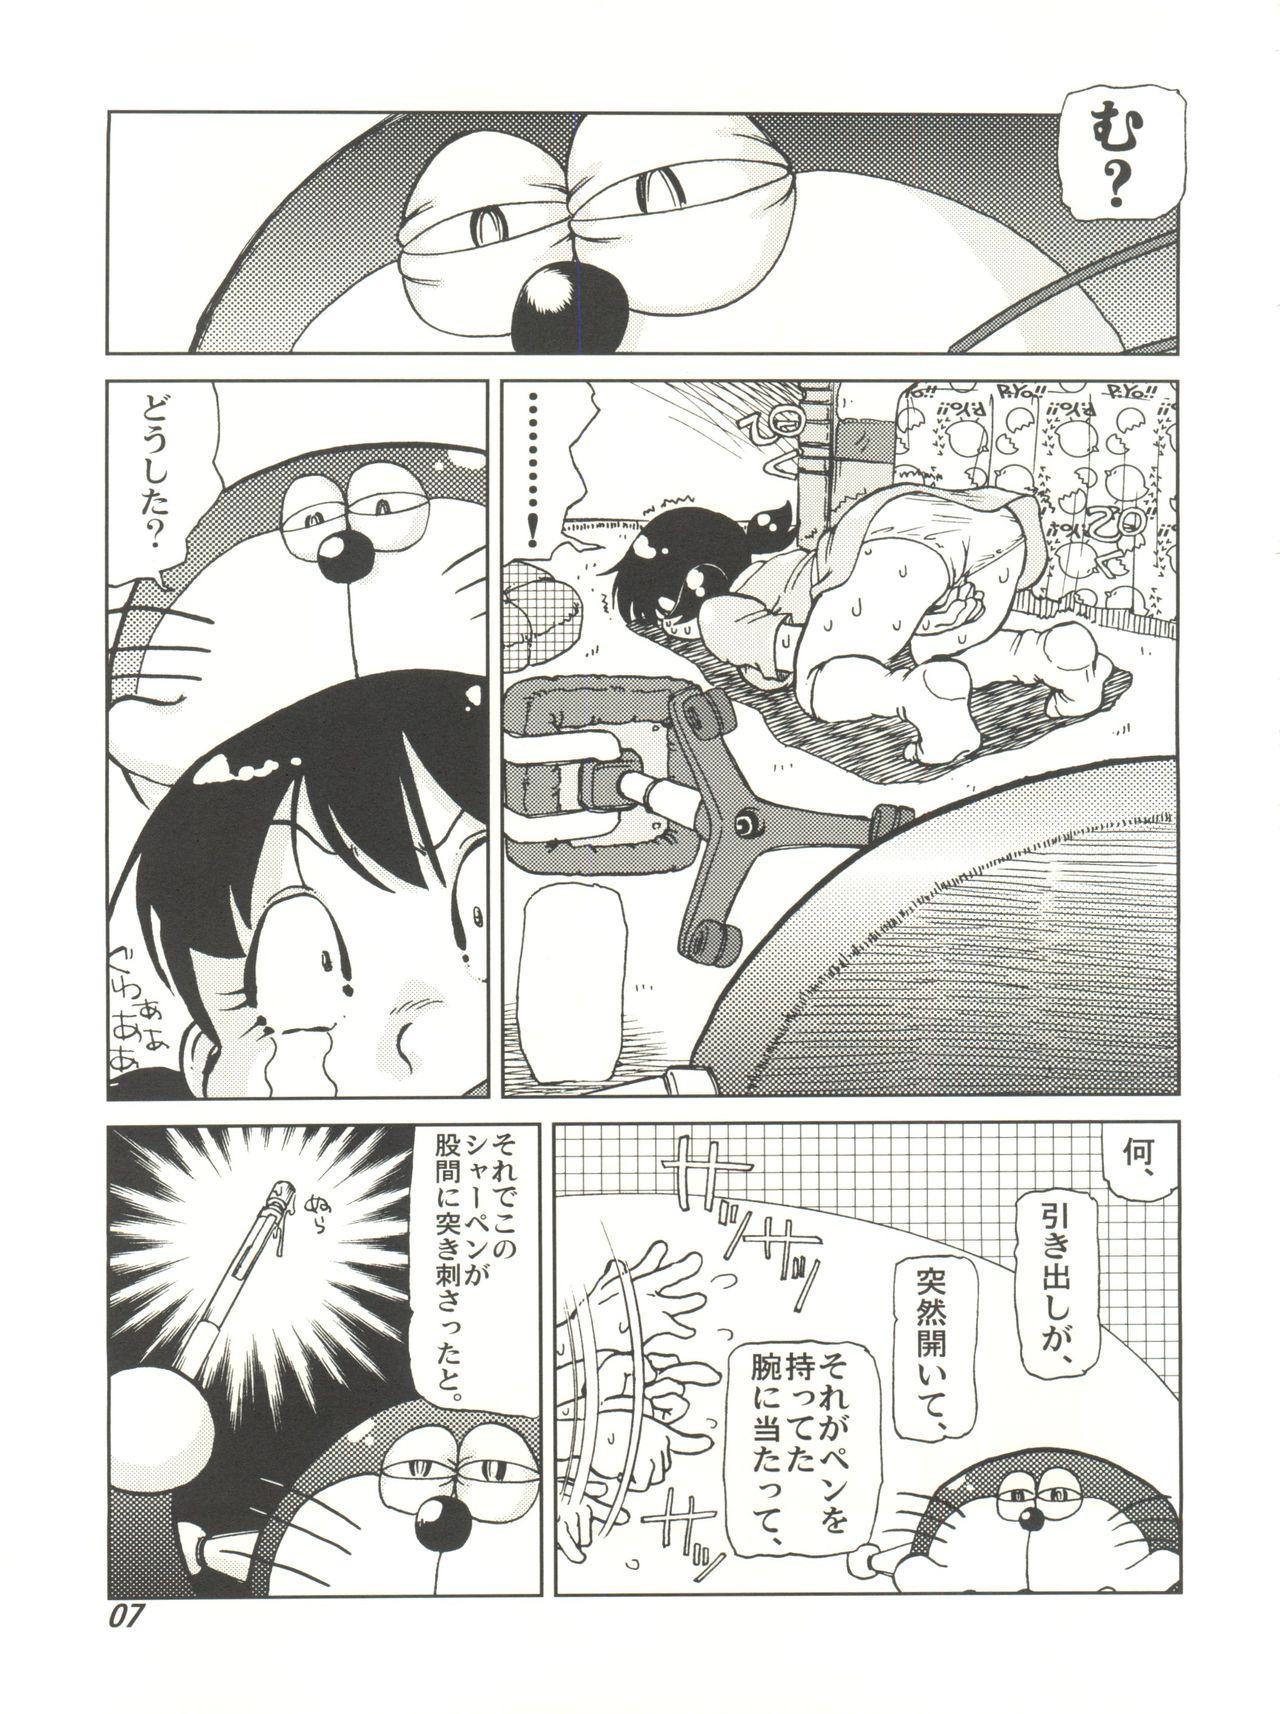 Sissy COUNTER DORA SHIZUKA & KAKUGARI GUARDIAN - Doraemon Jap - Page 6